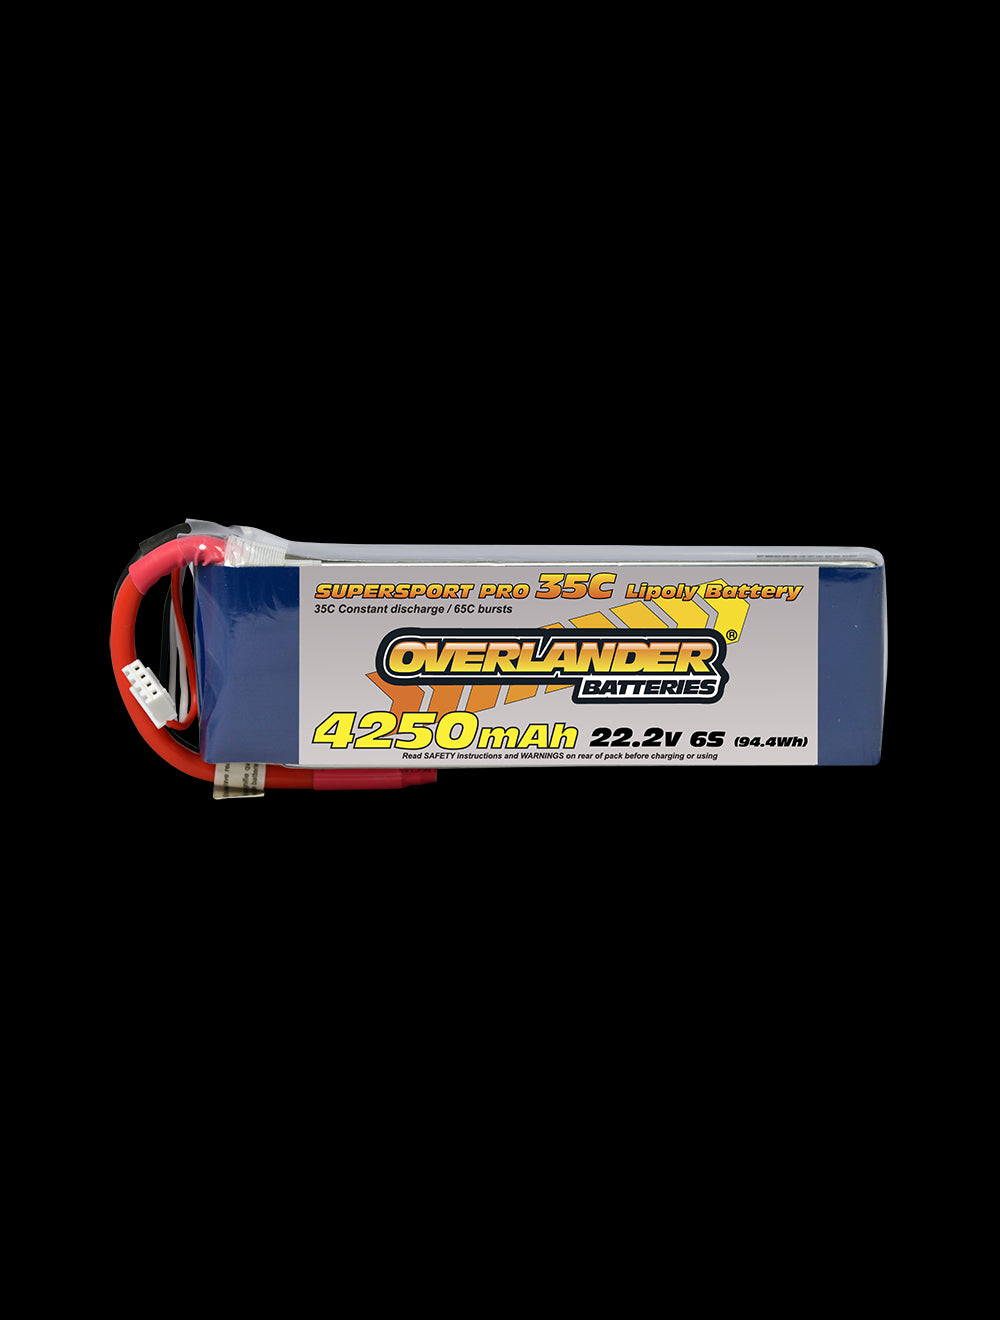 Overlander 4250mAh 22.2V 6S 35C Supersport Pro LiPo Battery - Deans Connector 2478